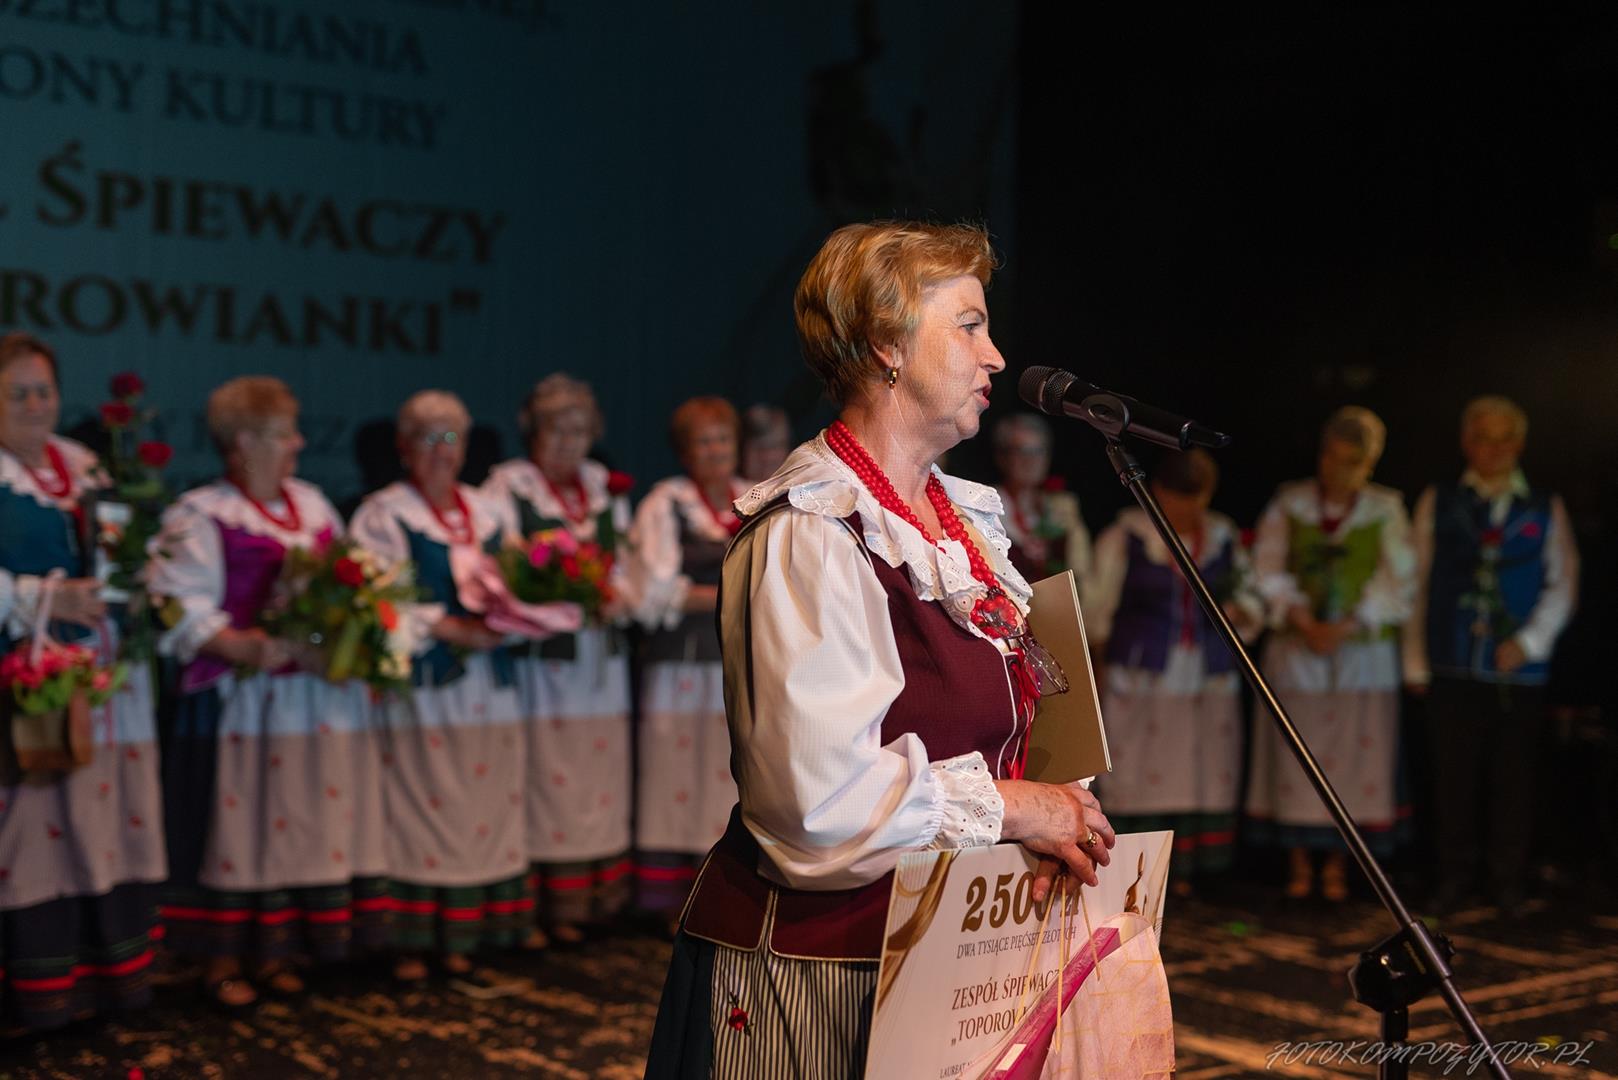 Zdjęcie przedstawia moment przemowy przewodniczącej Zespołu Śpiewaczego Toporowianki Anny Kyrcz